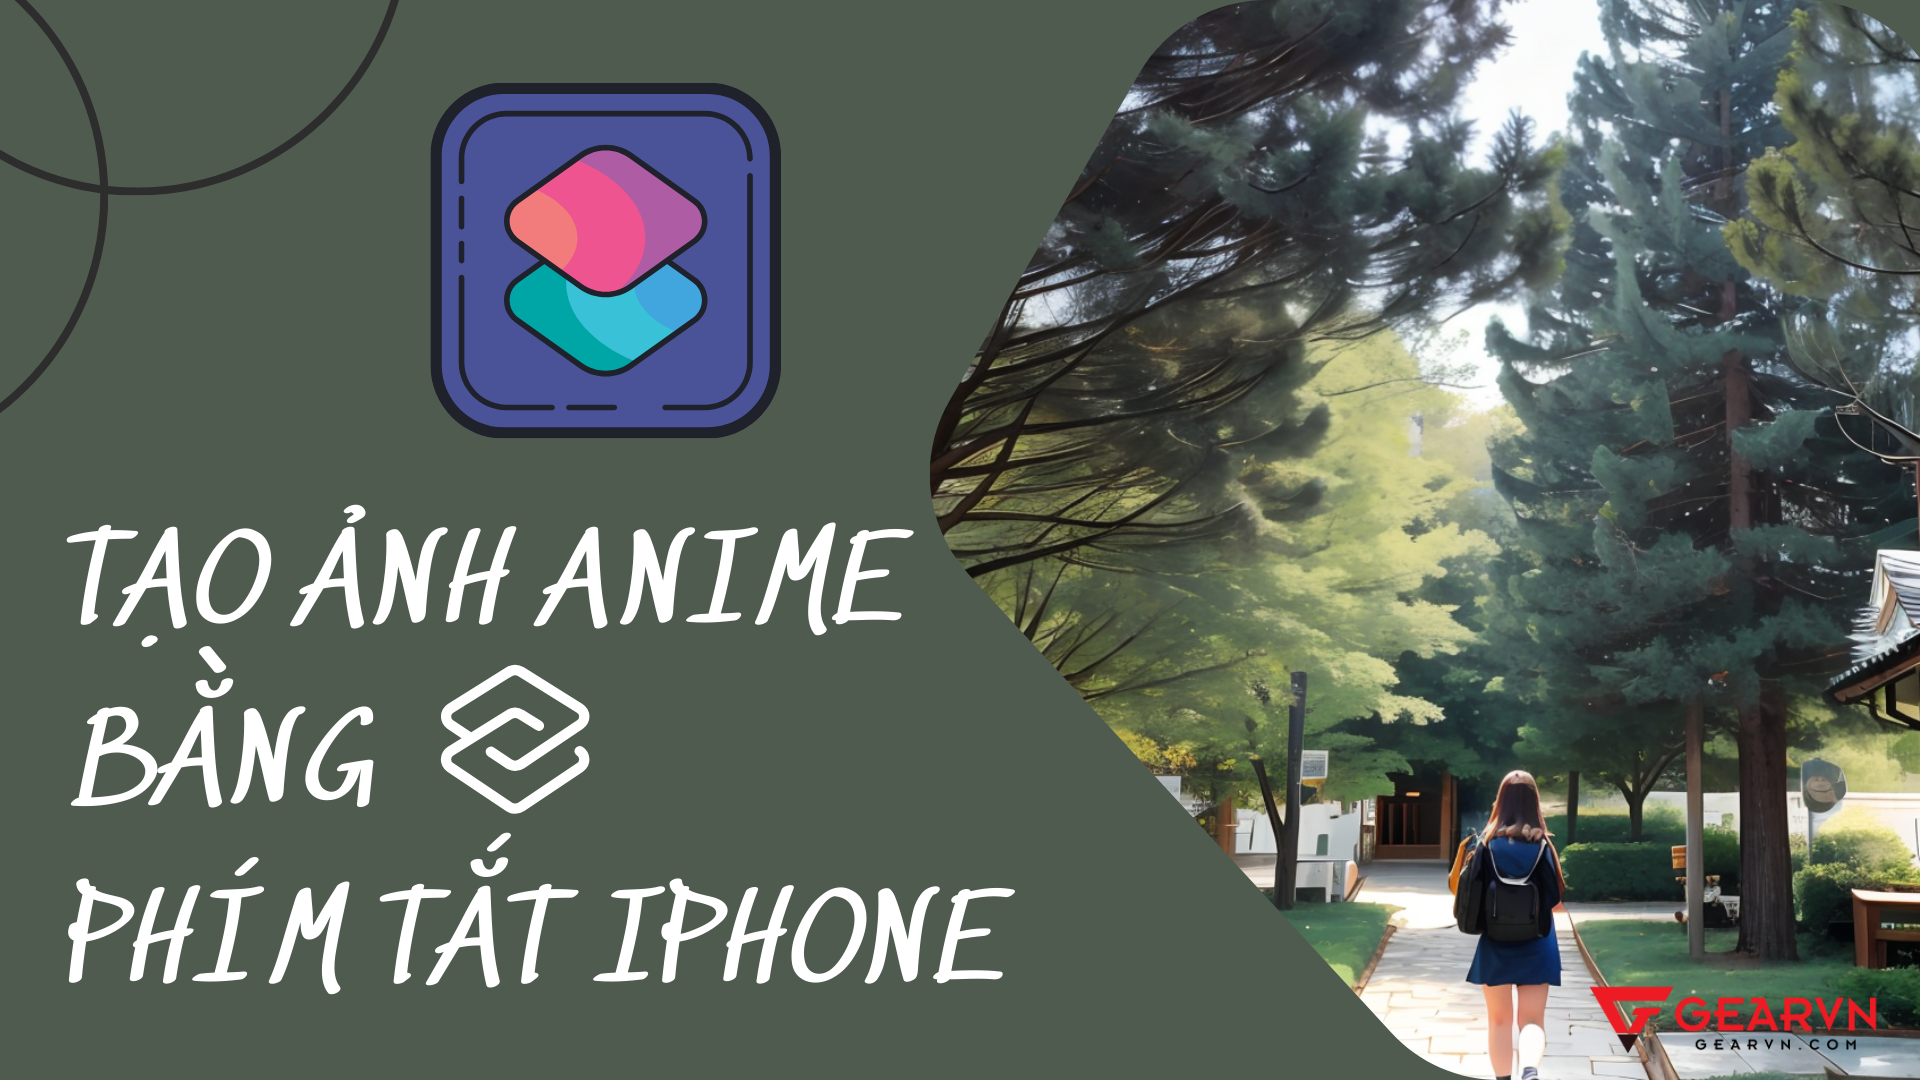 Đừng tạo ảnh anime bằng phím tắt iPhone, bị ghiền đó!